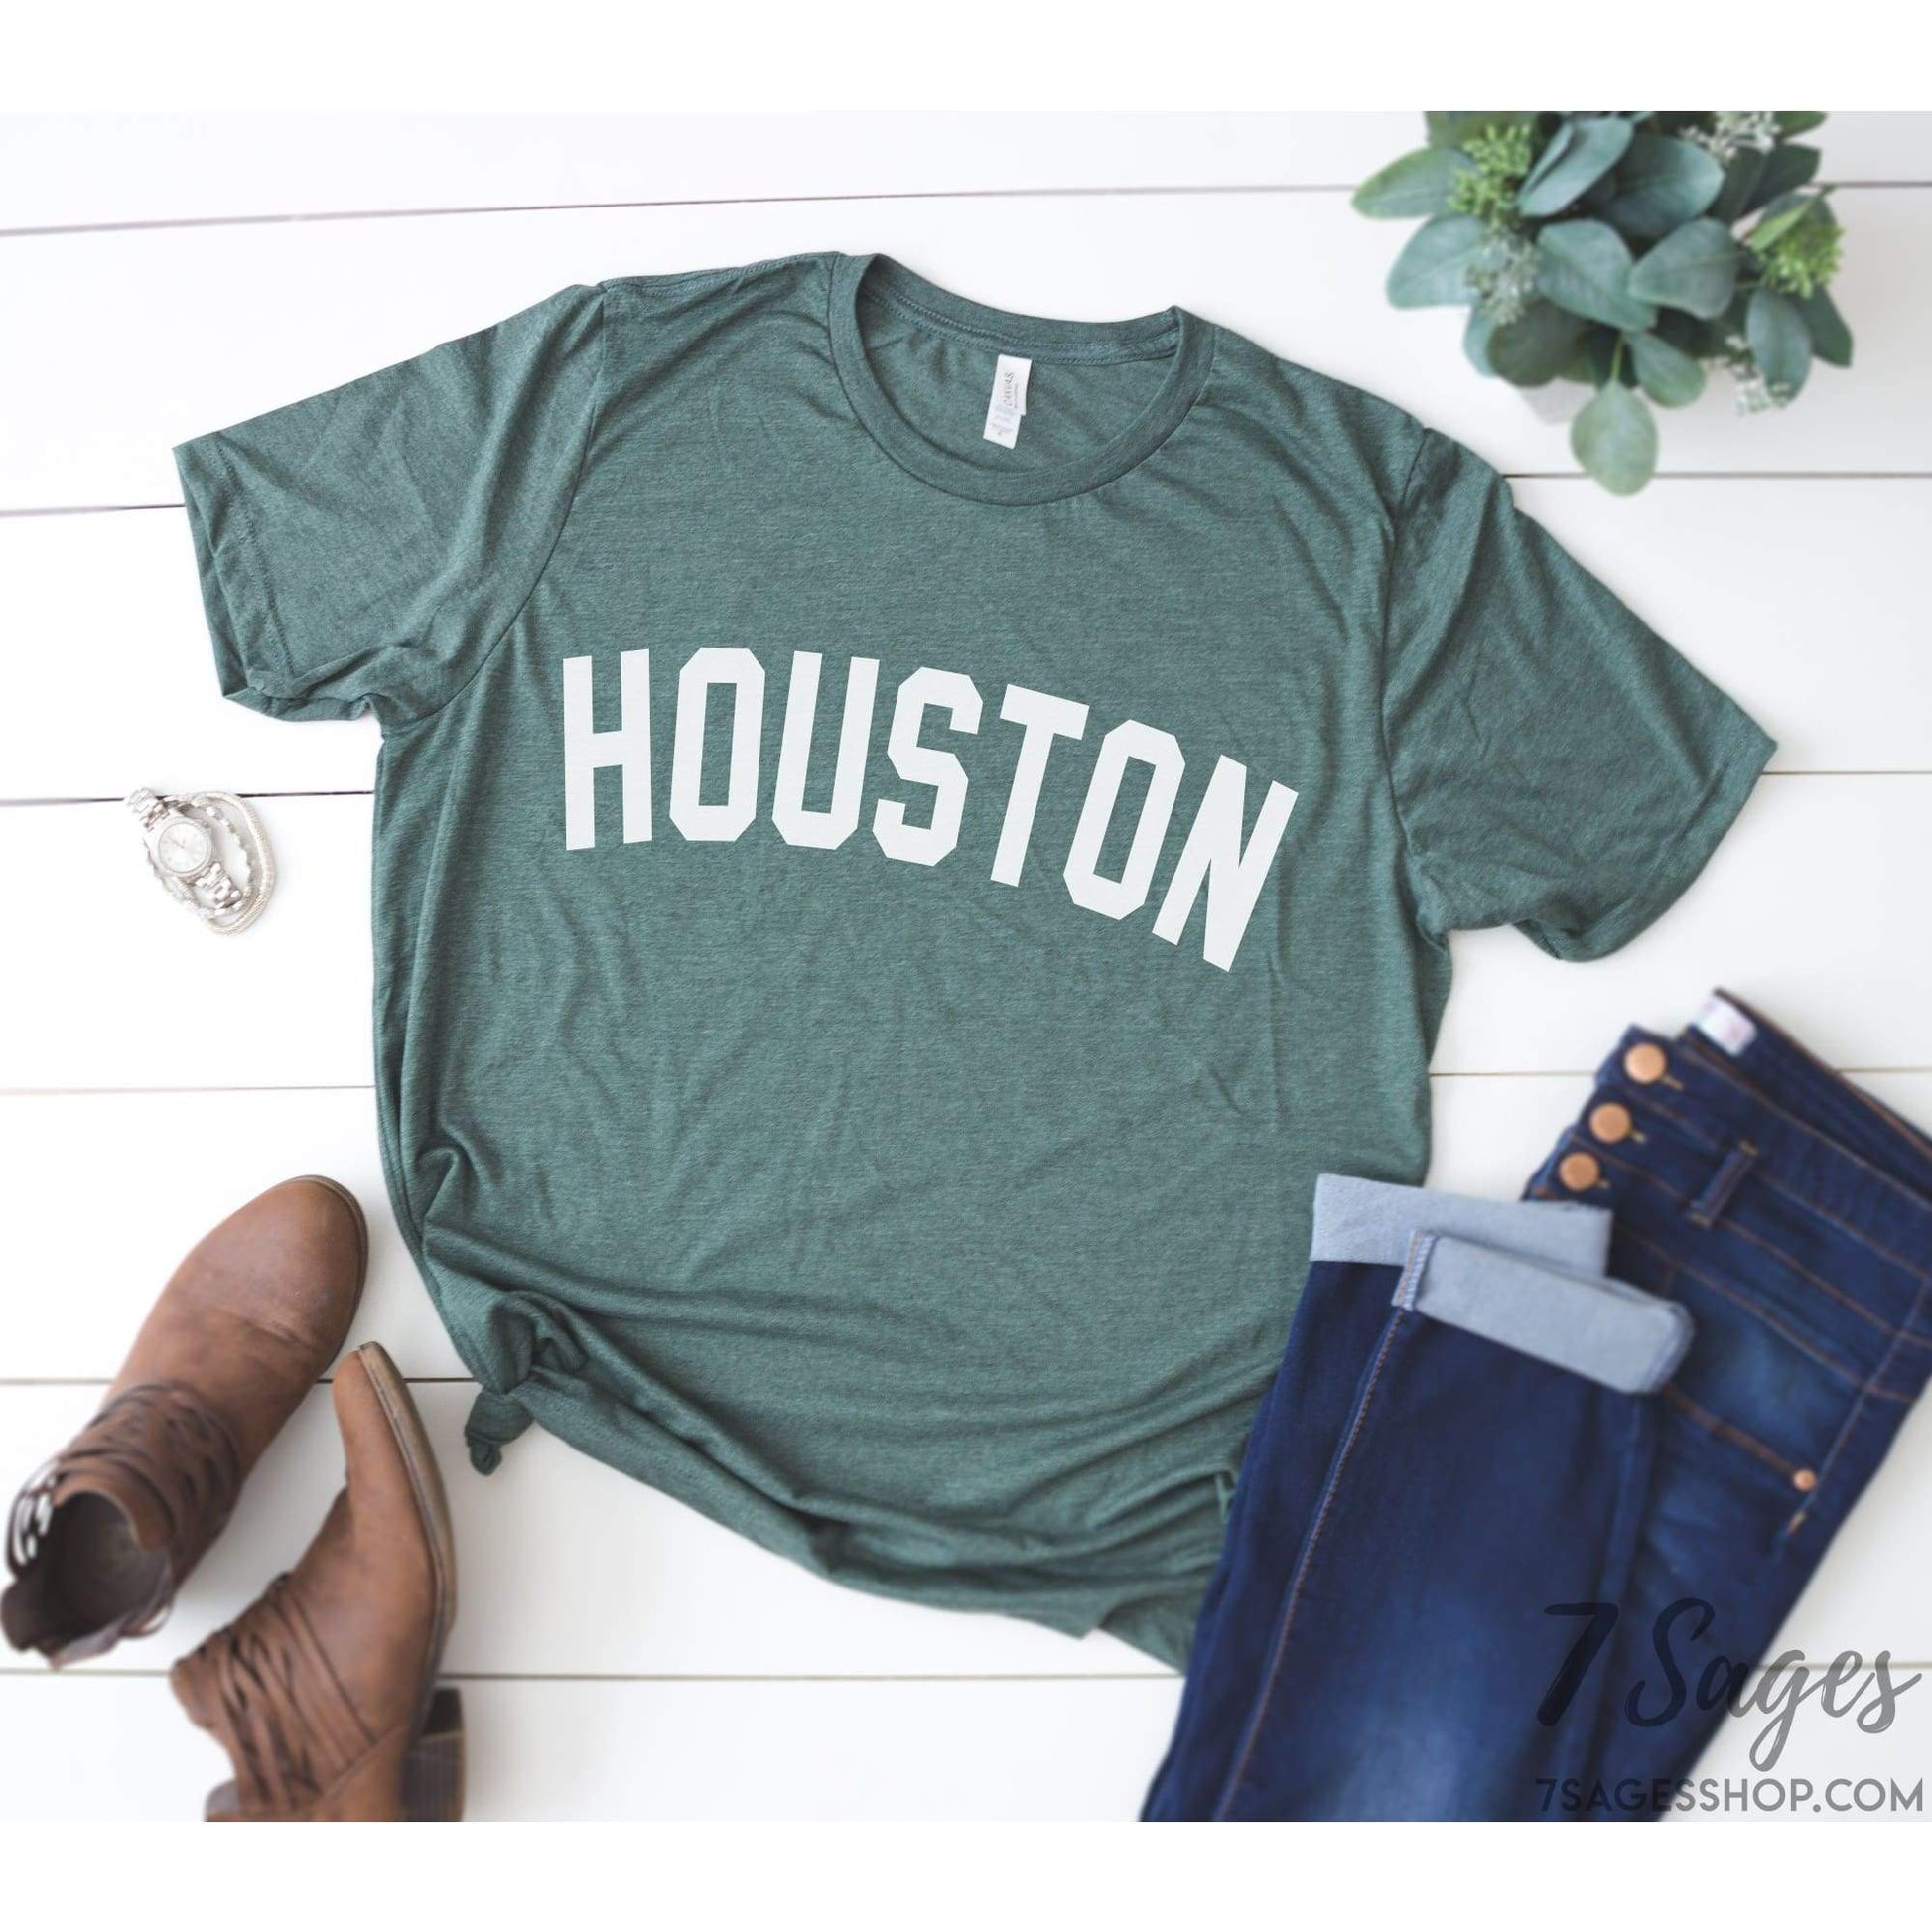 Houston Shirt - Houston T-Shirt - Houston T-Shirt